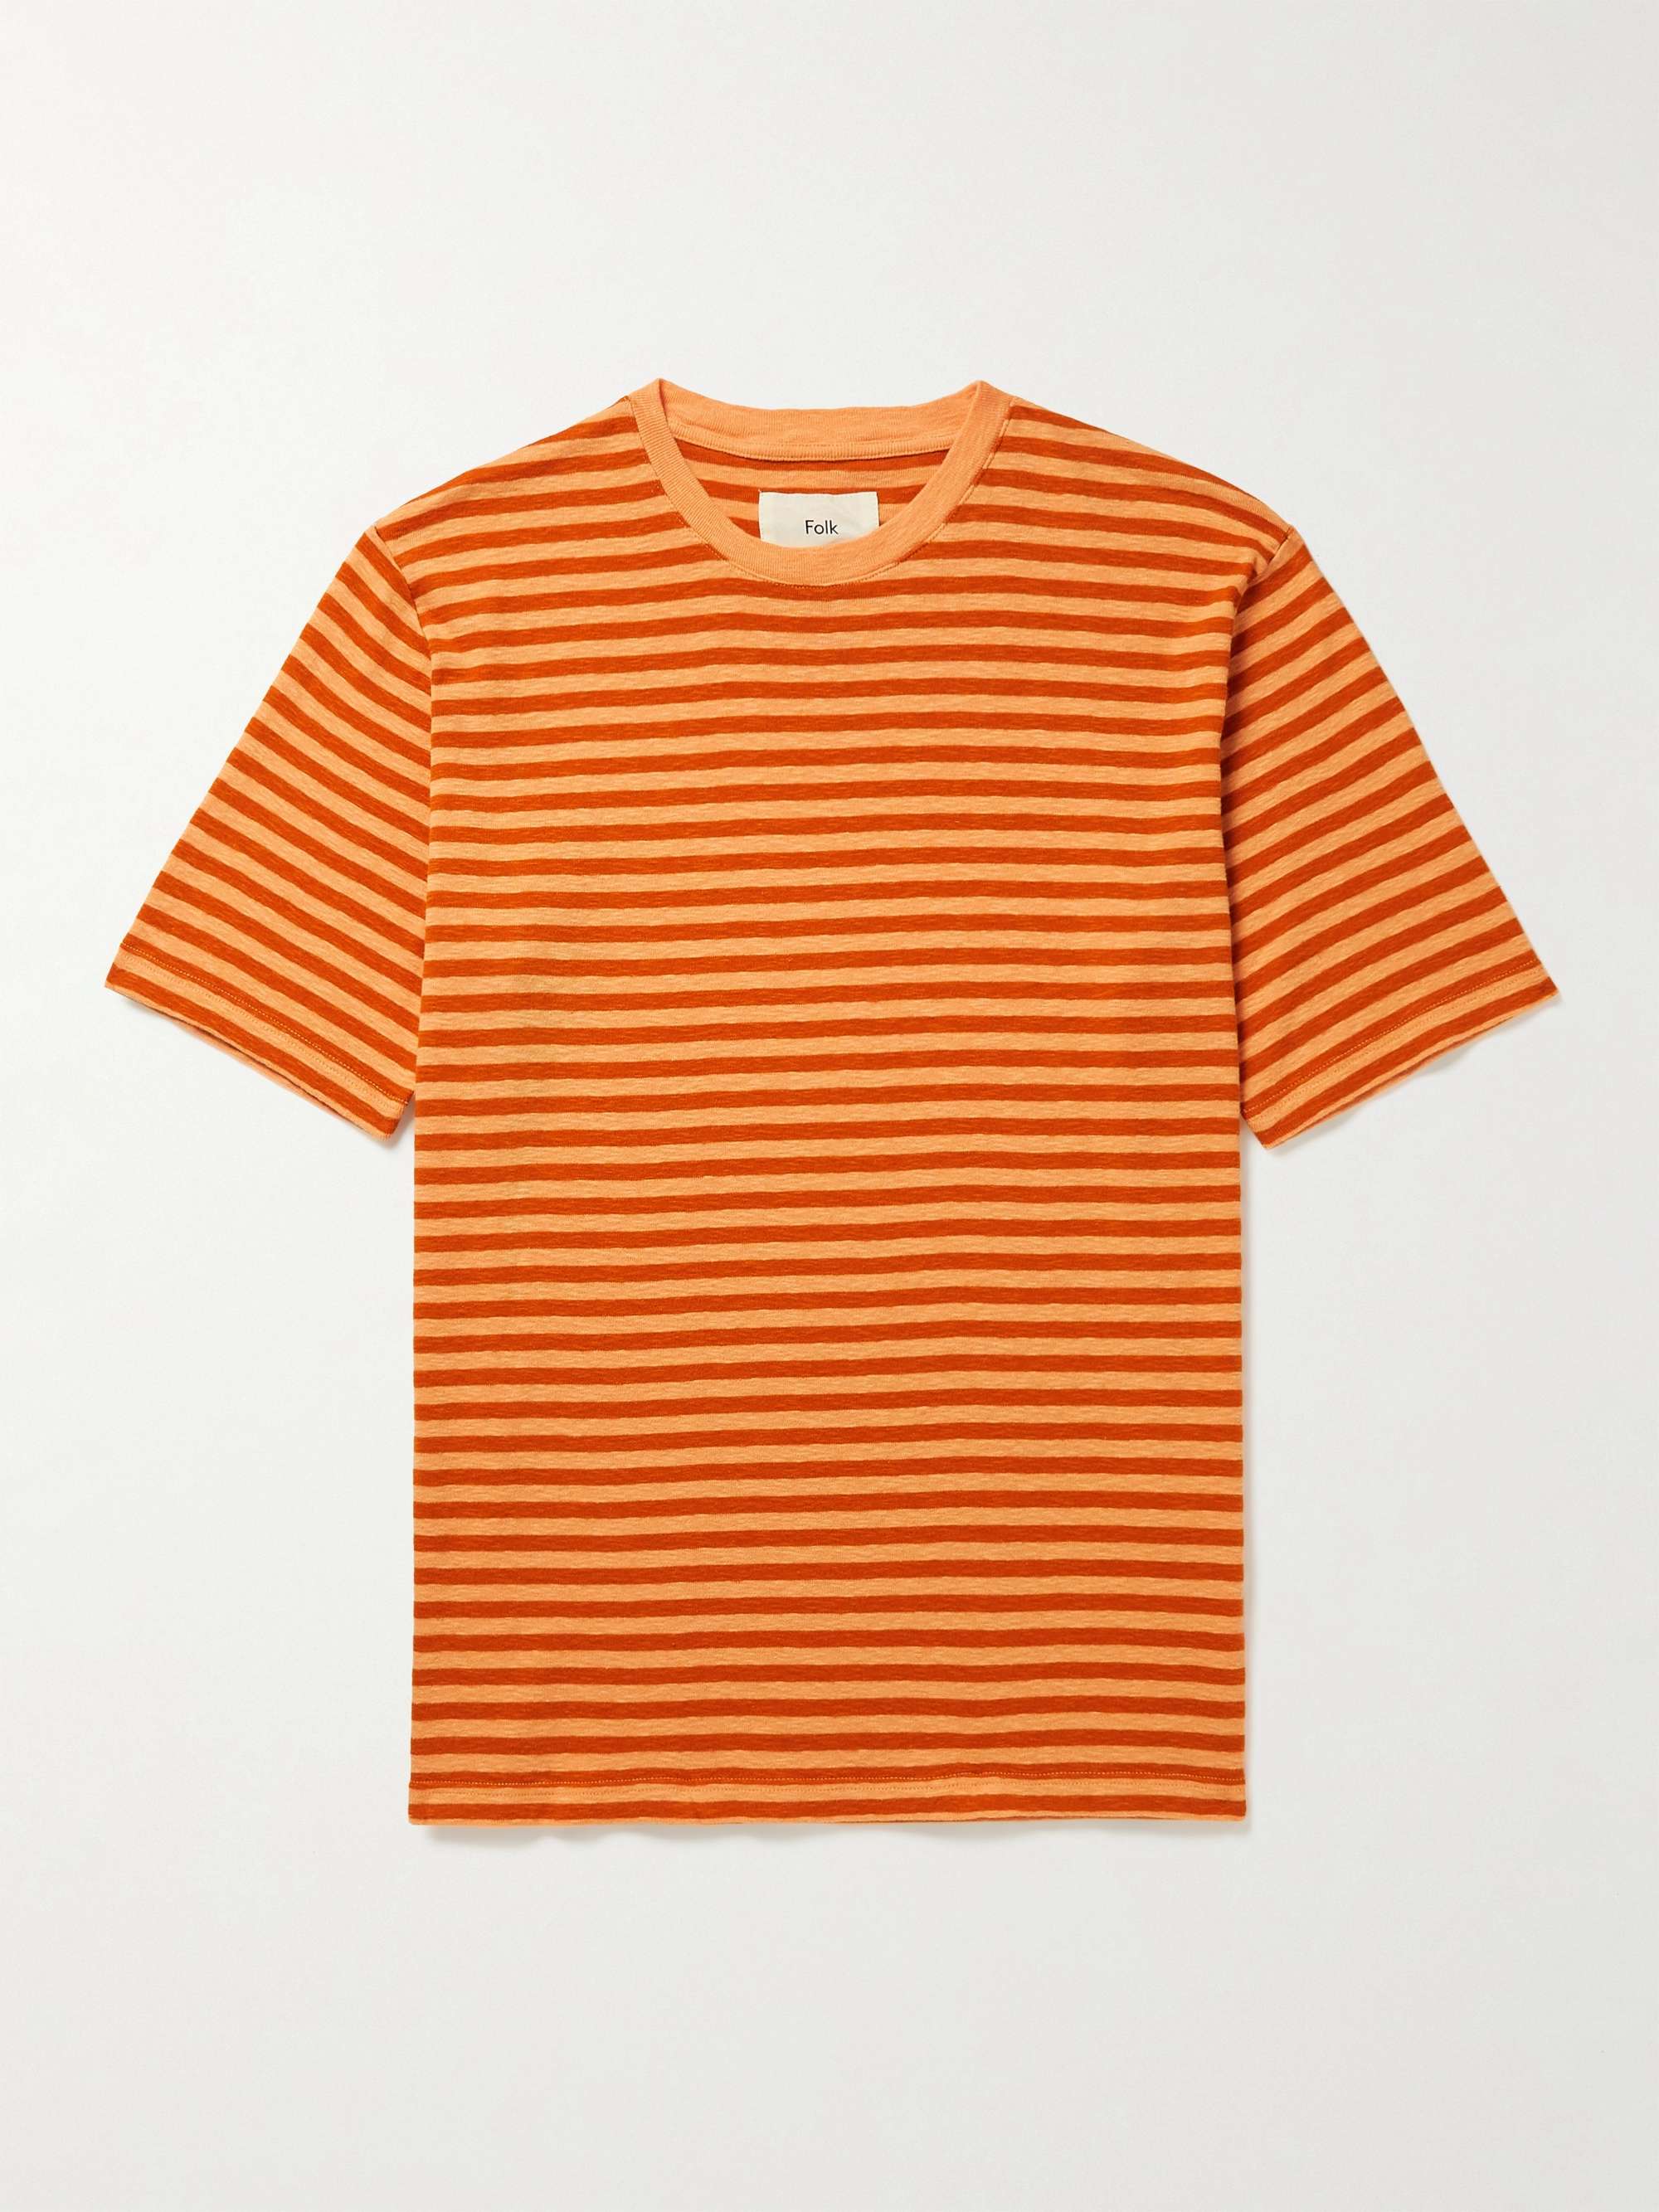 FOLK Striped Slub Cotton T-Shirt